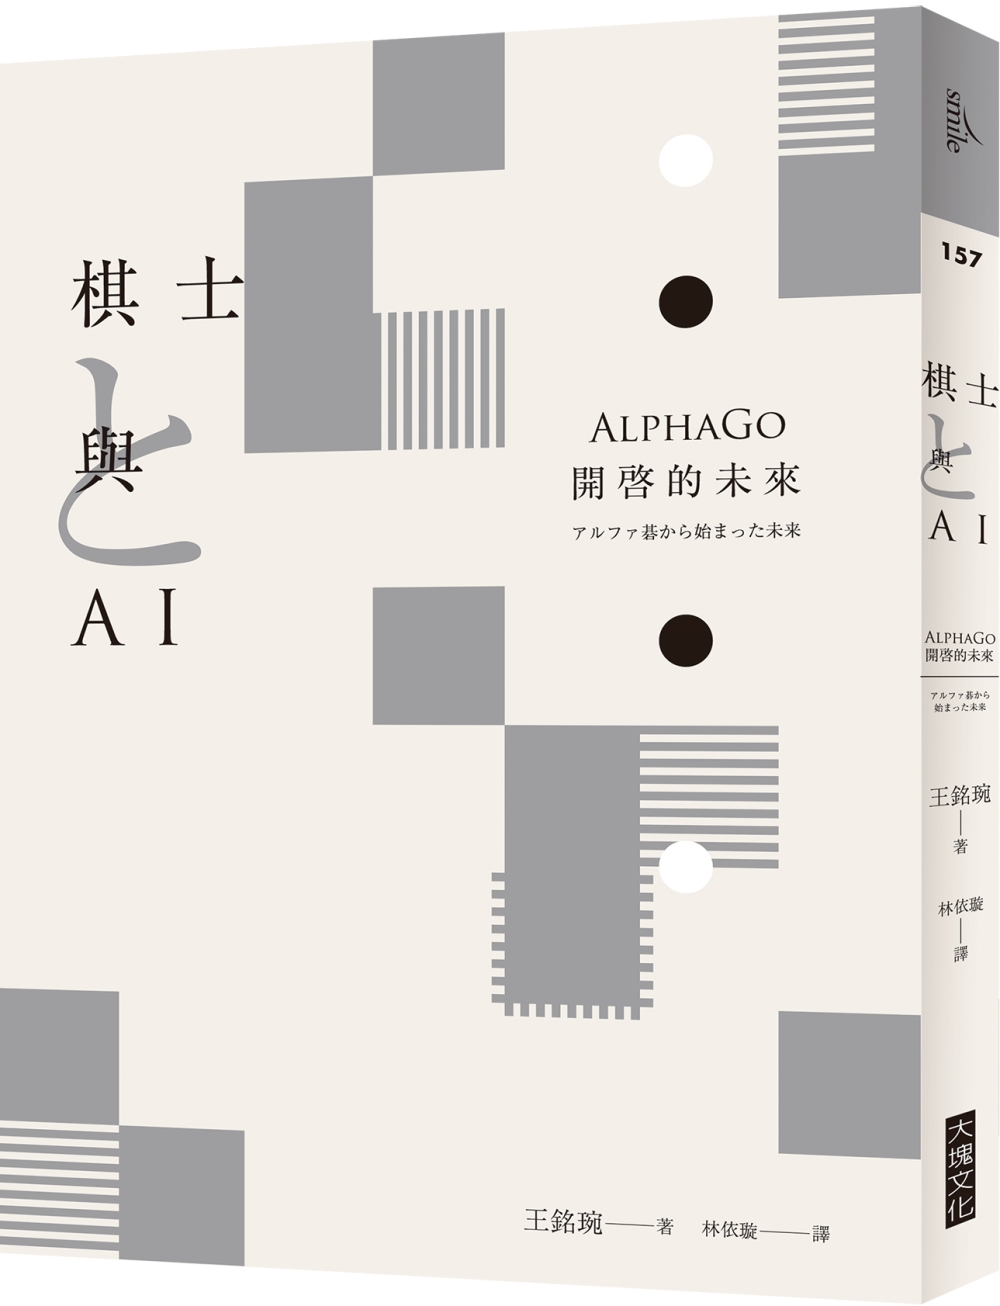 棋士與AI：AlphaGo開啓的未來